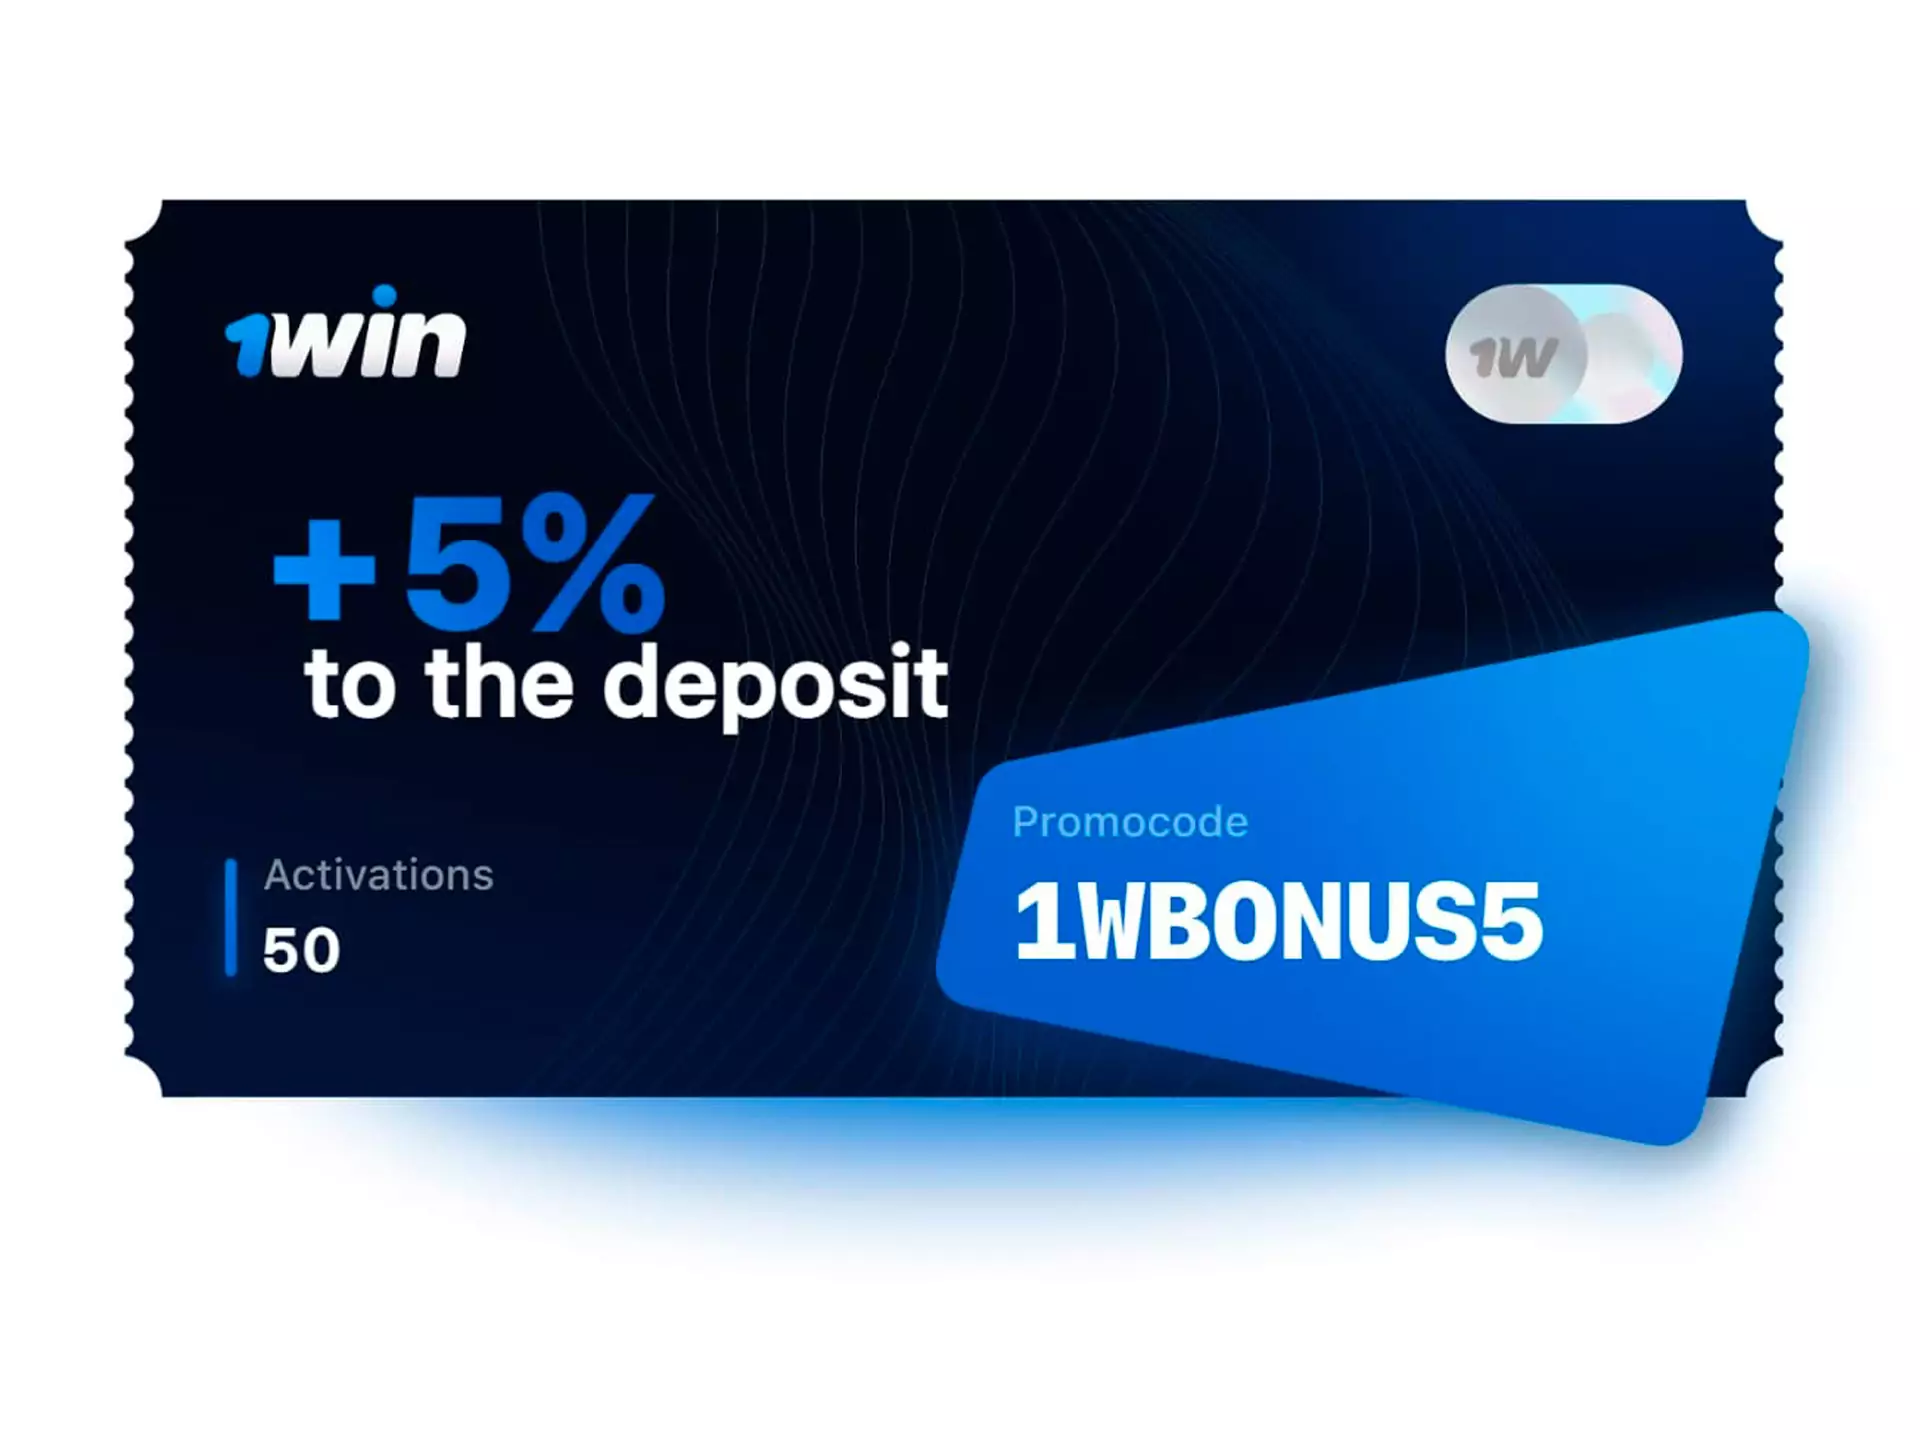 Use our promo code 1WBONUS5 for an extra 5% bonus.